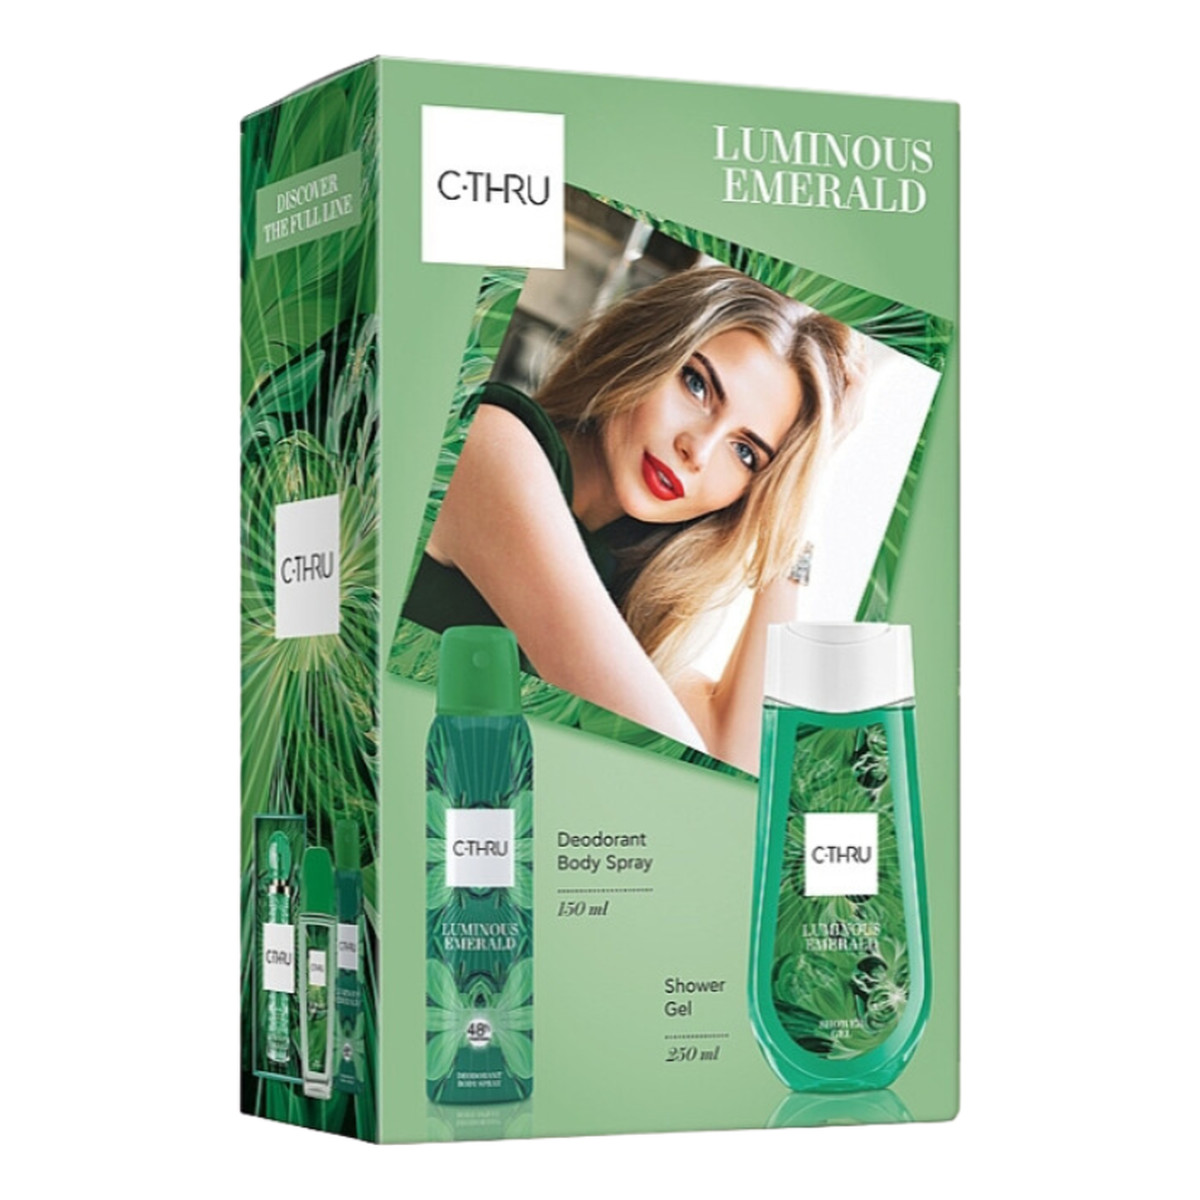 C-Thru Luminous Emerald Zestaw prezentowy Dezodorant spray 150ml + Żel pod prysznic 250ml